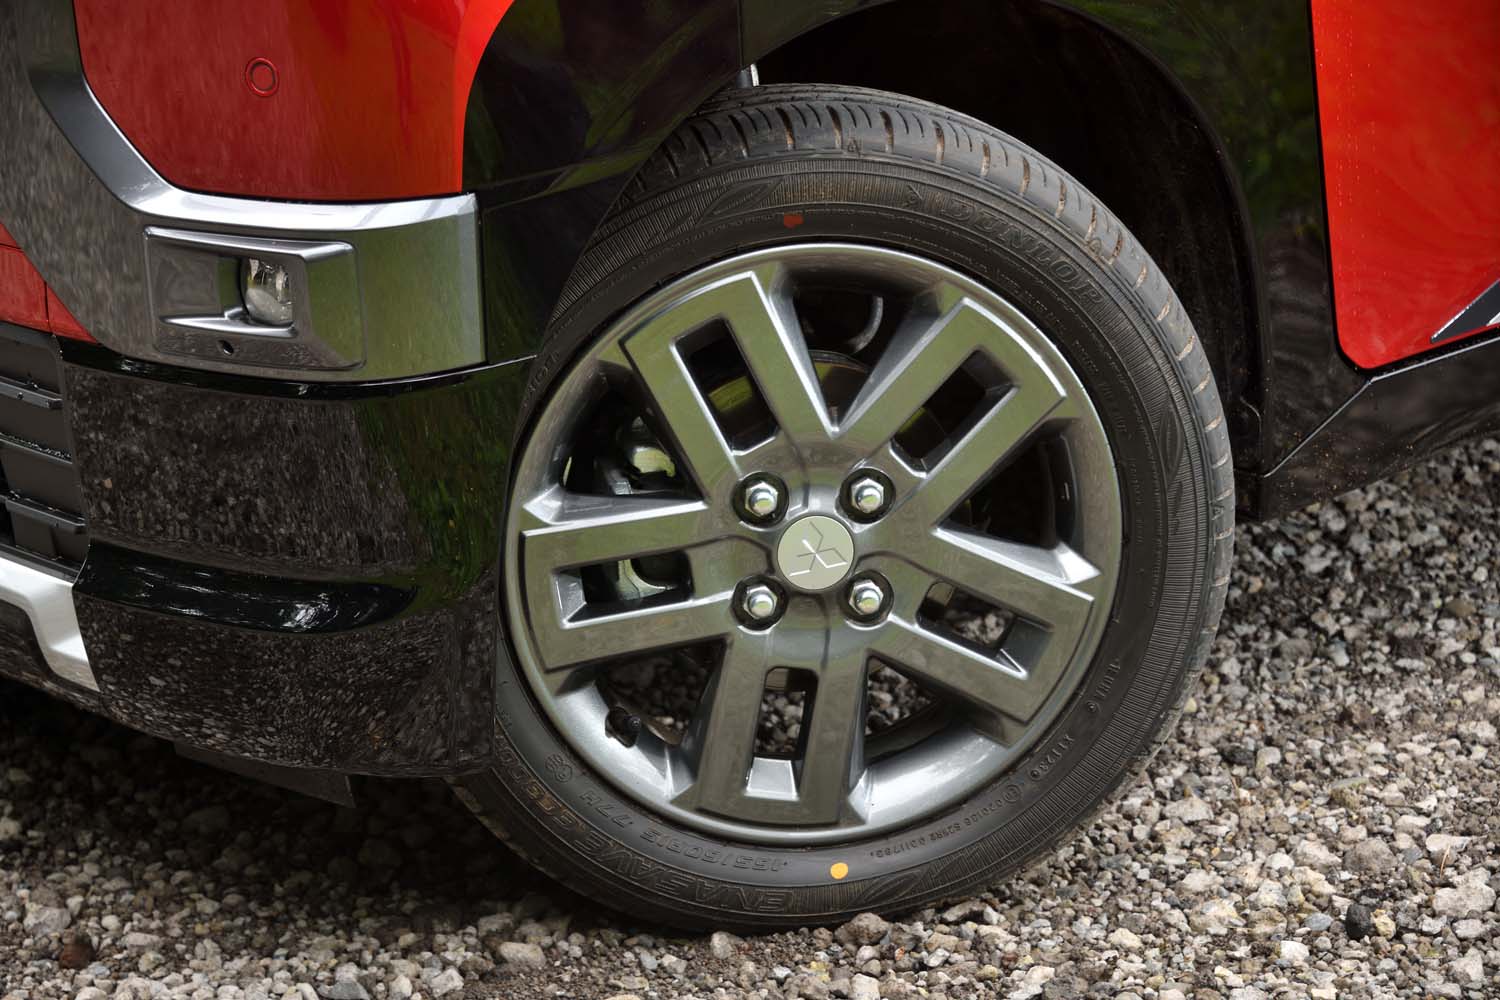 4WDモデルは165/60R15の大径タイヤを装備。これで最低地上高を稼いでいる。